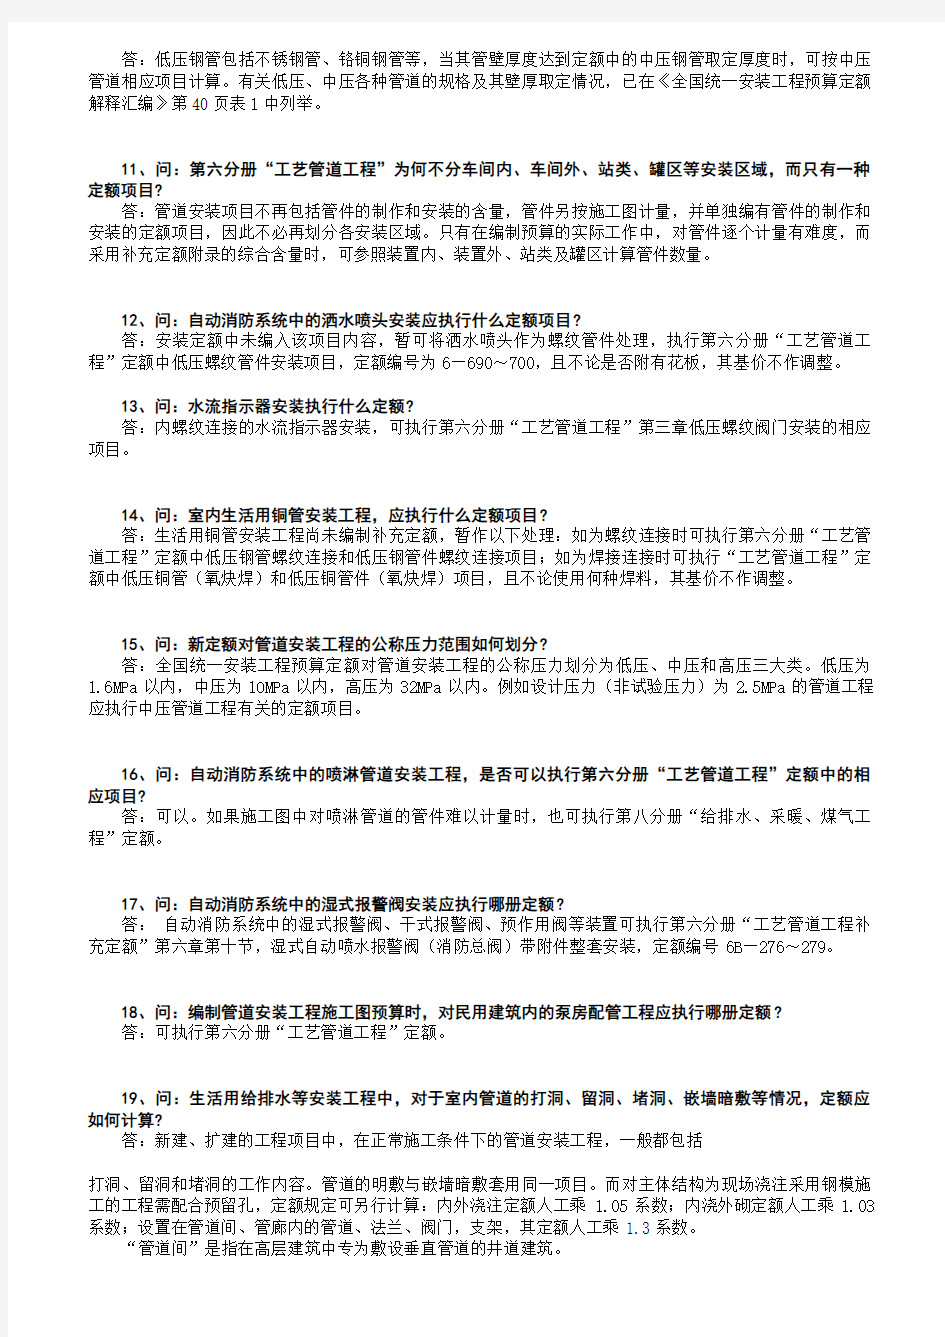 上海安装定额解释(93、2000)